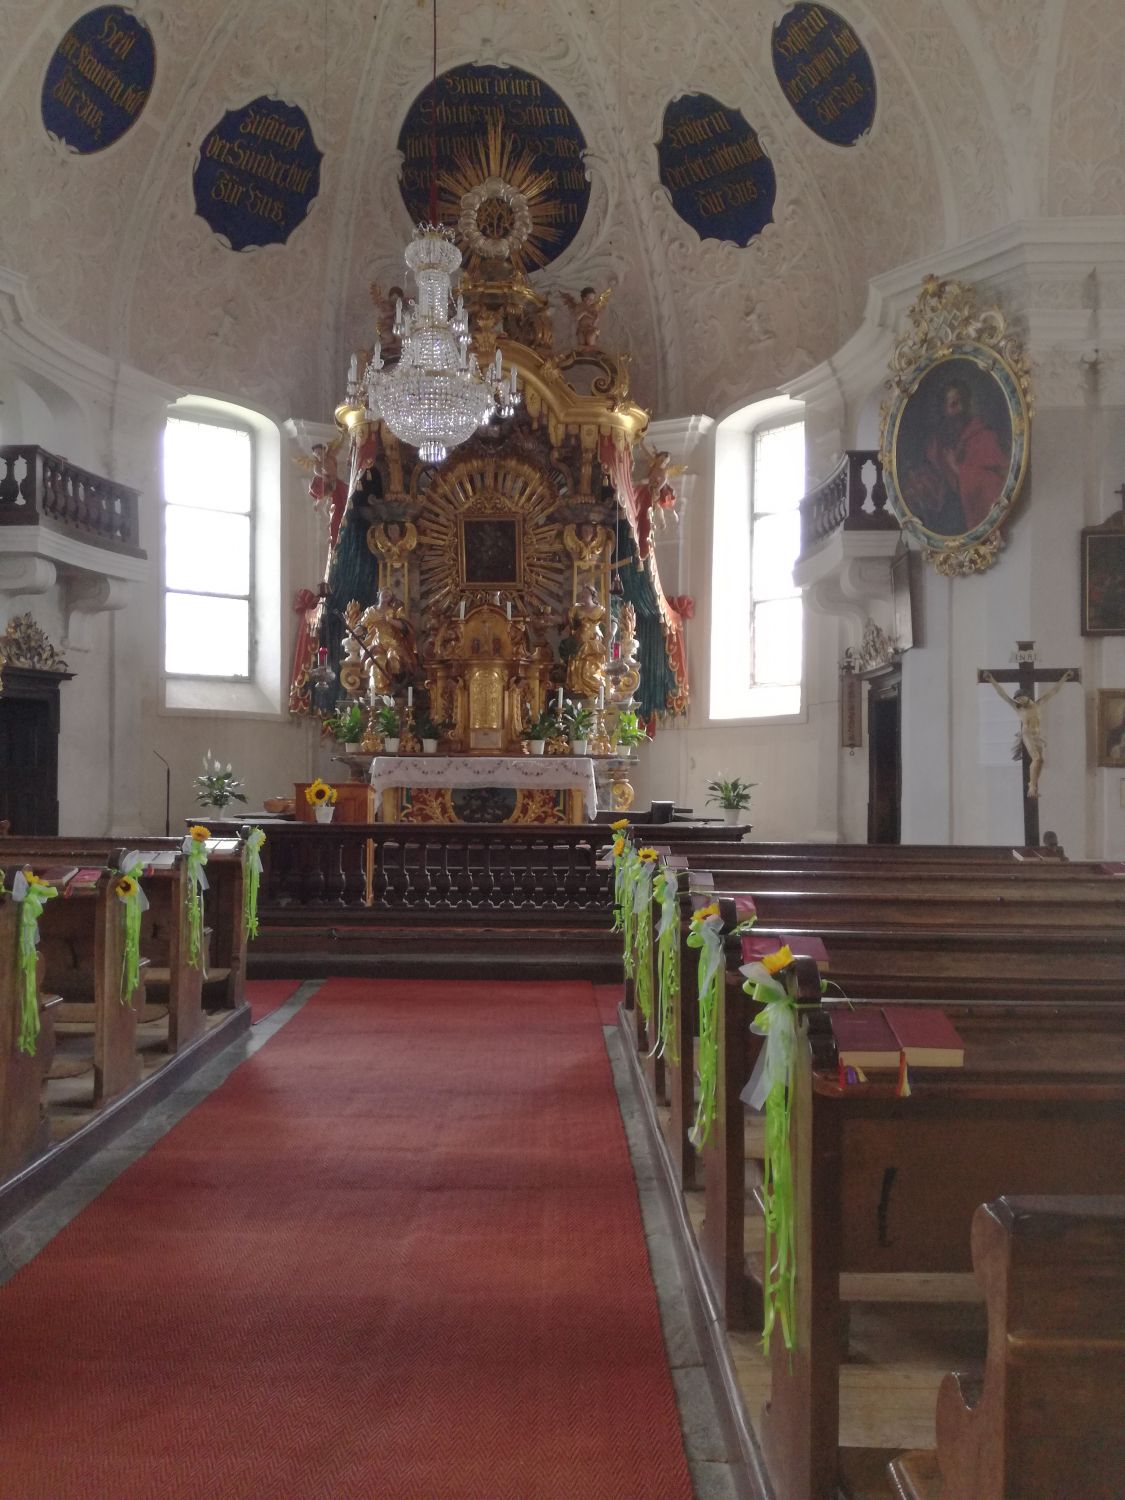 Wallfahrtskirche Maria Hilf in Kärnten